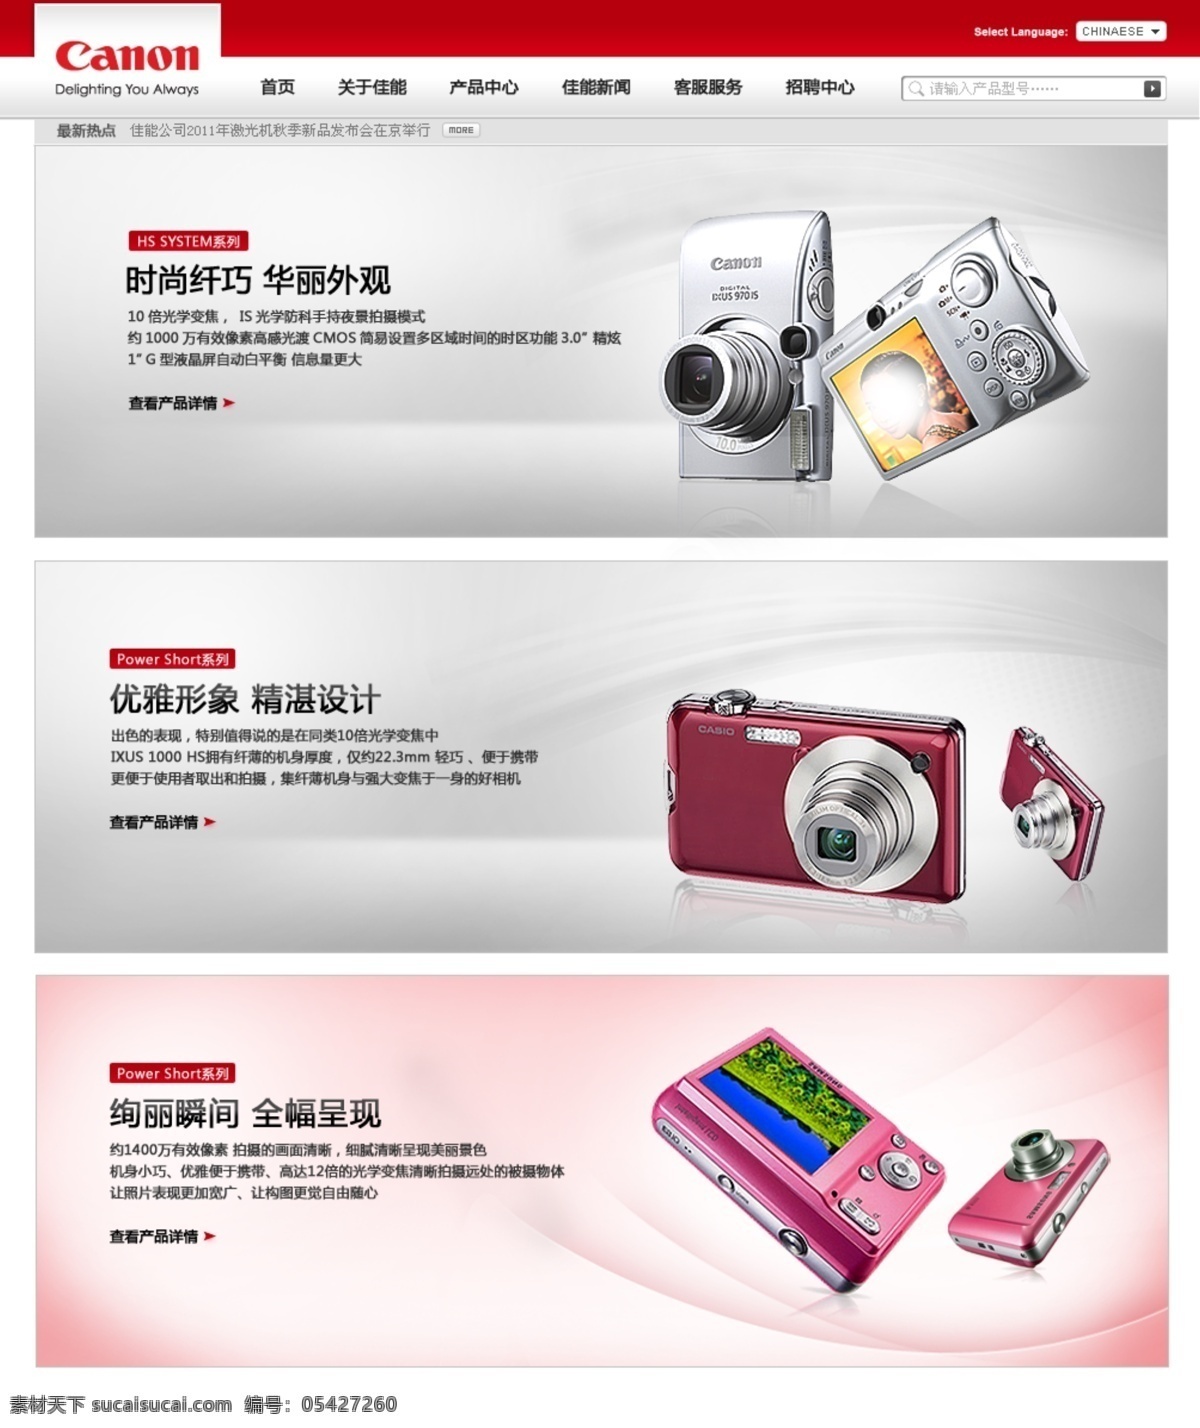 手机 相机 佳能 网页模板 源文件 照相机 中文模版 模板下载 手机相机 psd源文件